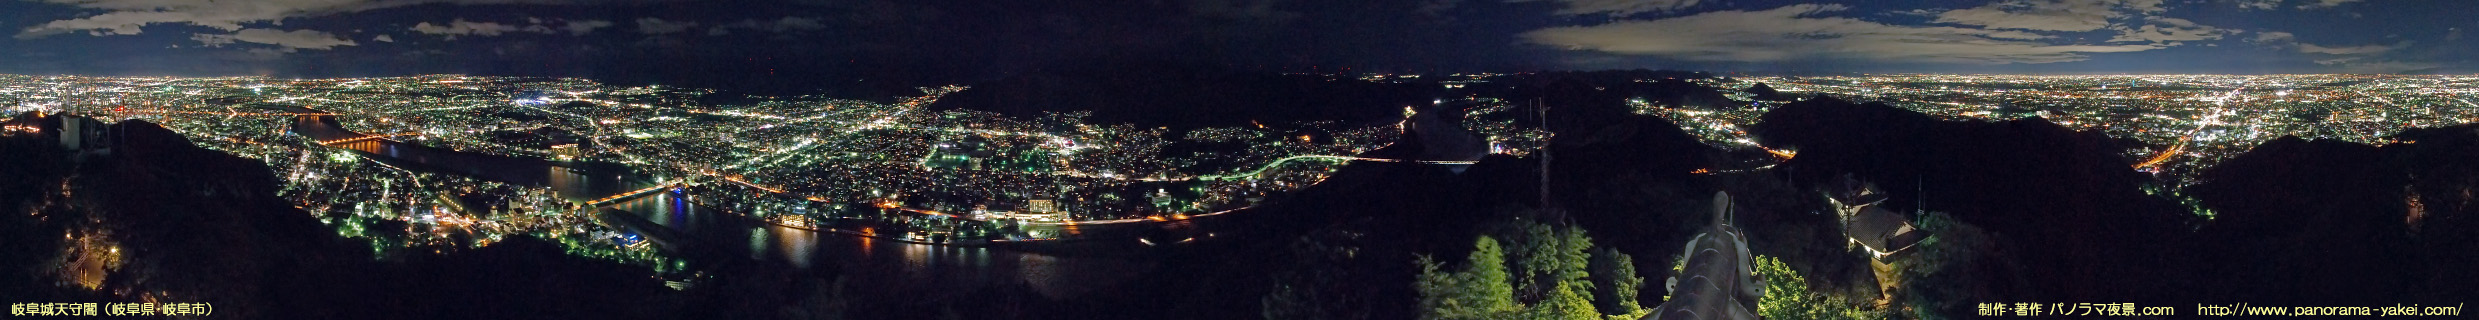 岐阜城天守閣からの360度パノラマ夜景写真